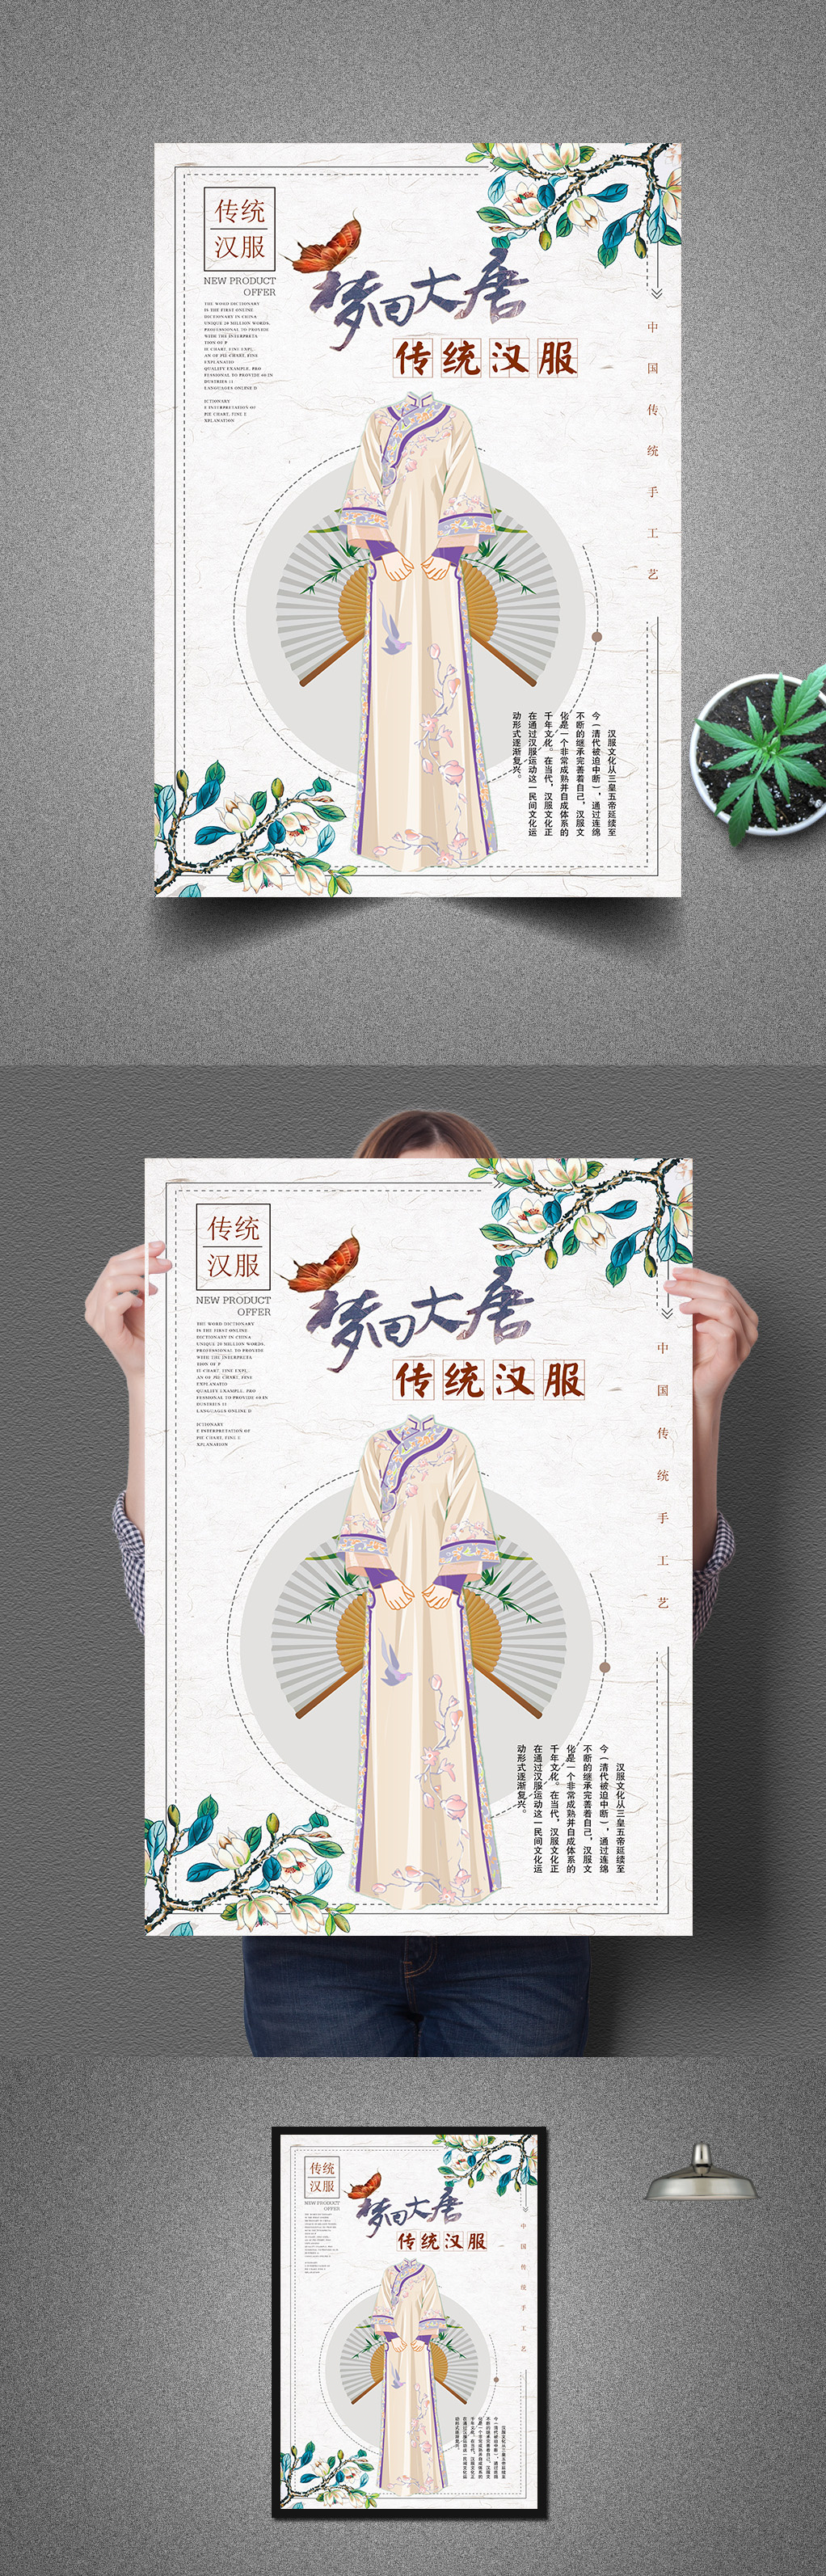 中国汉服海报